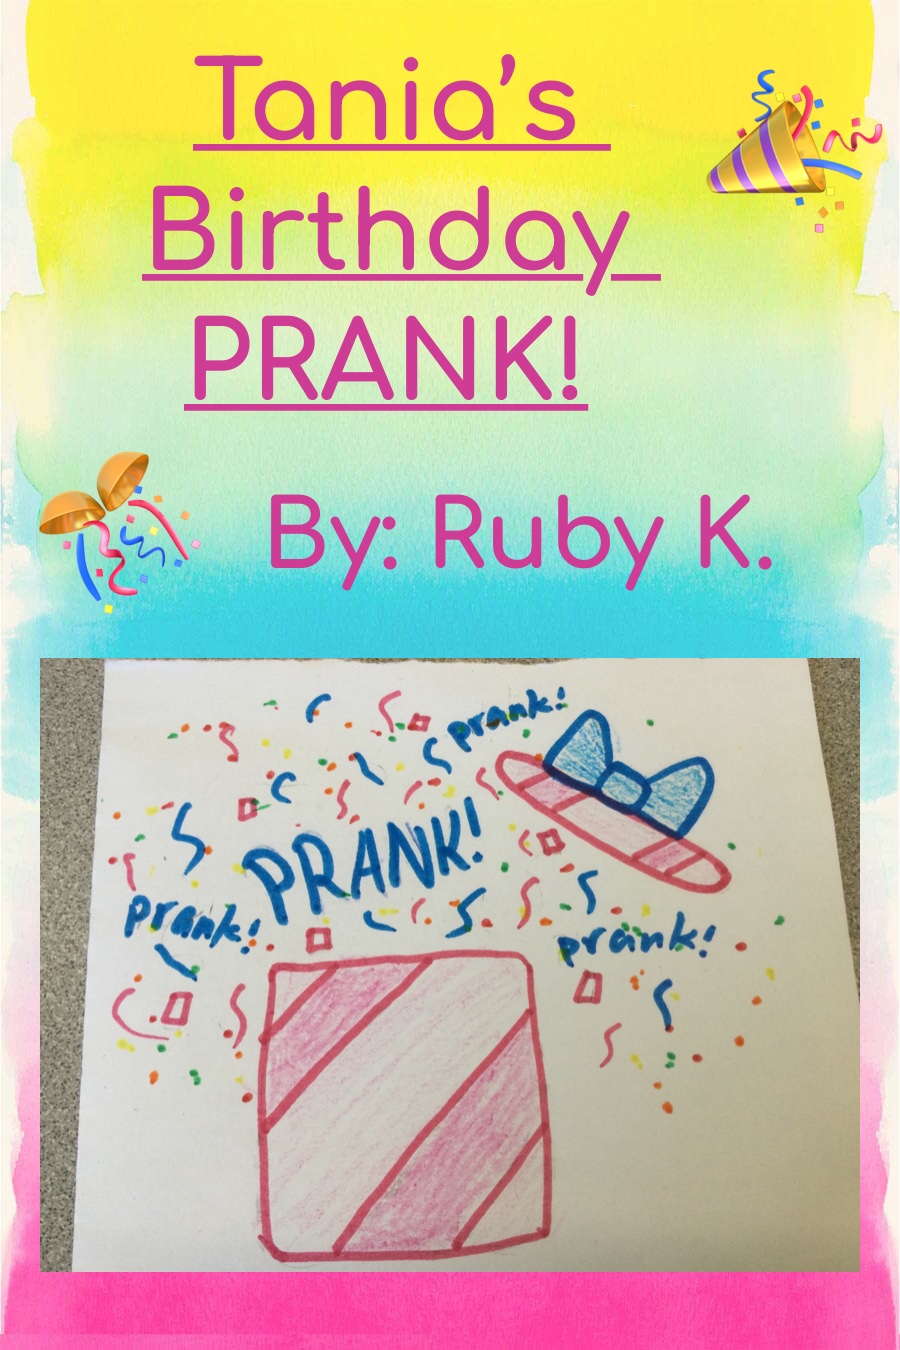 Tania’s Birthday Prank By Ruby K